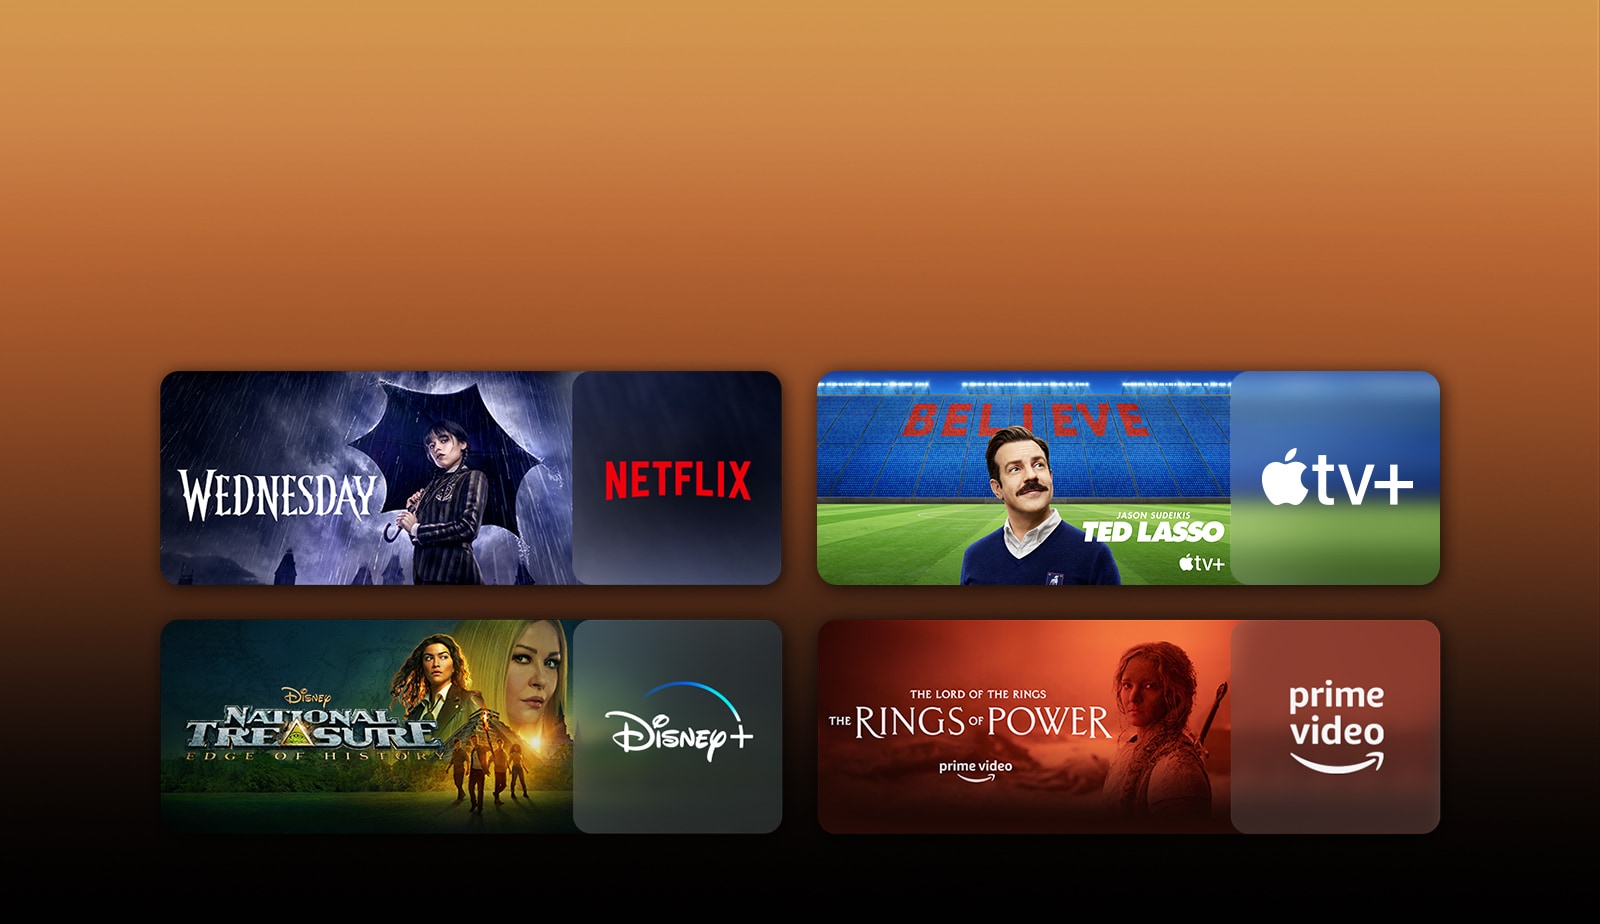 每個標誌旁都有串流媒體服務平台的標誌和對應的影片片段。顯示 Netflix 的《星期三》、Apple TV 的《泰德·拉索》、Disney Plus 的《國家寶藏》和 PRIME VIDEO 的《力量之戒》之圖片。